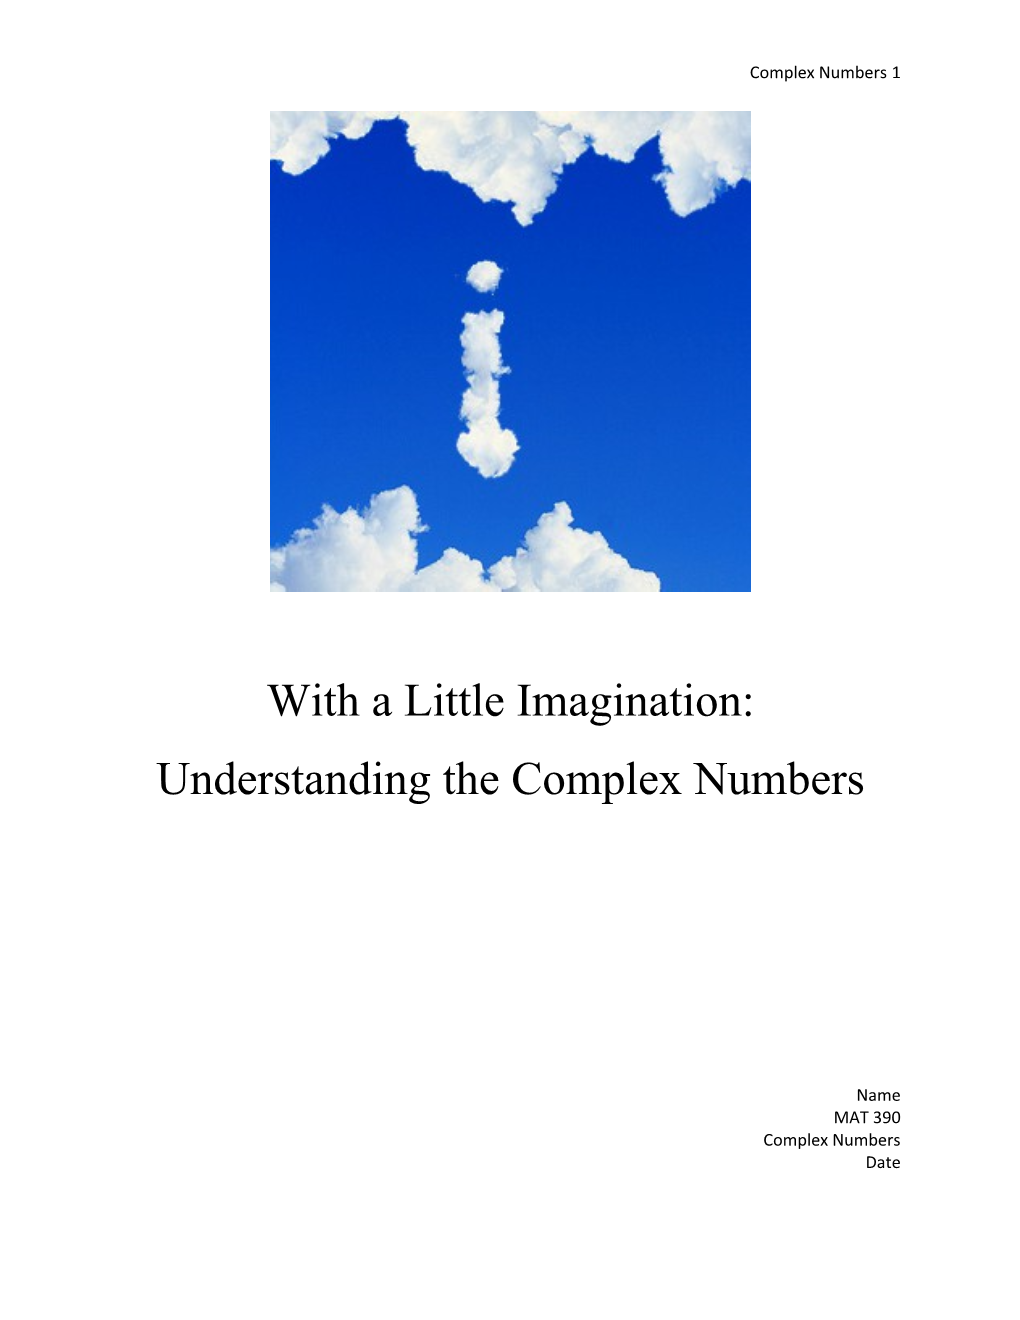 Understanding the Complex Numbers